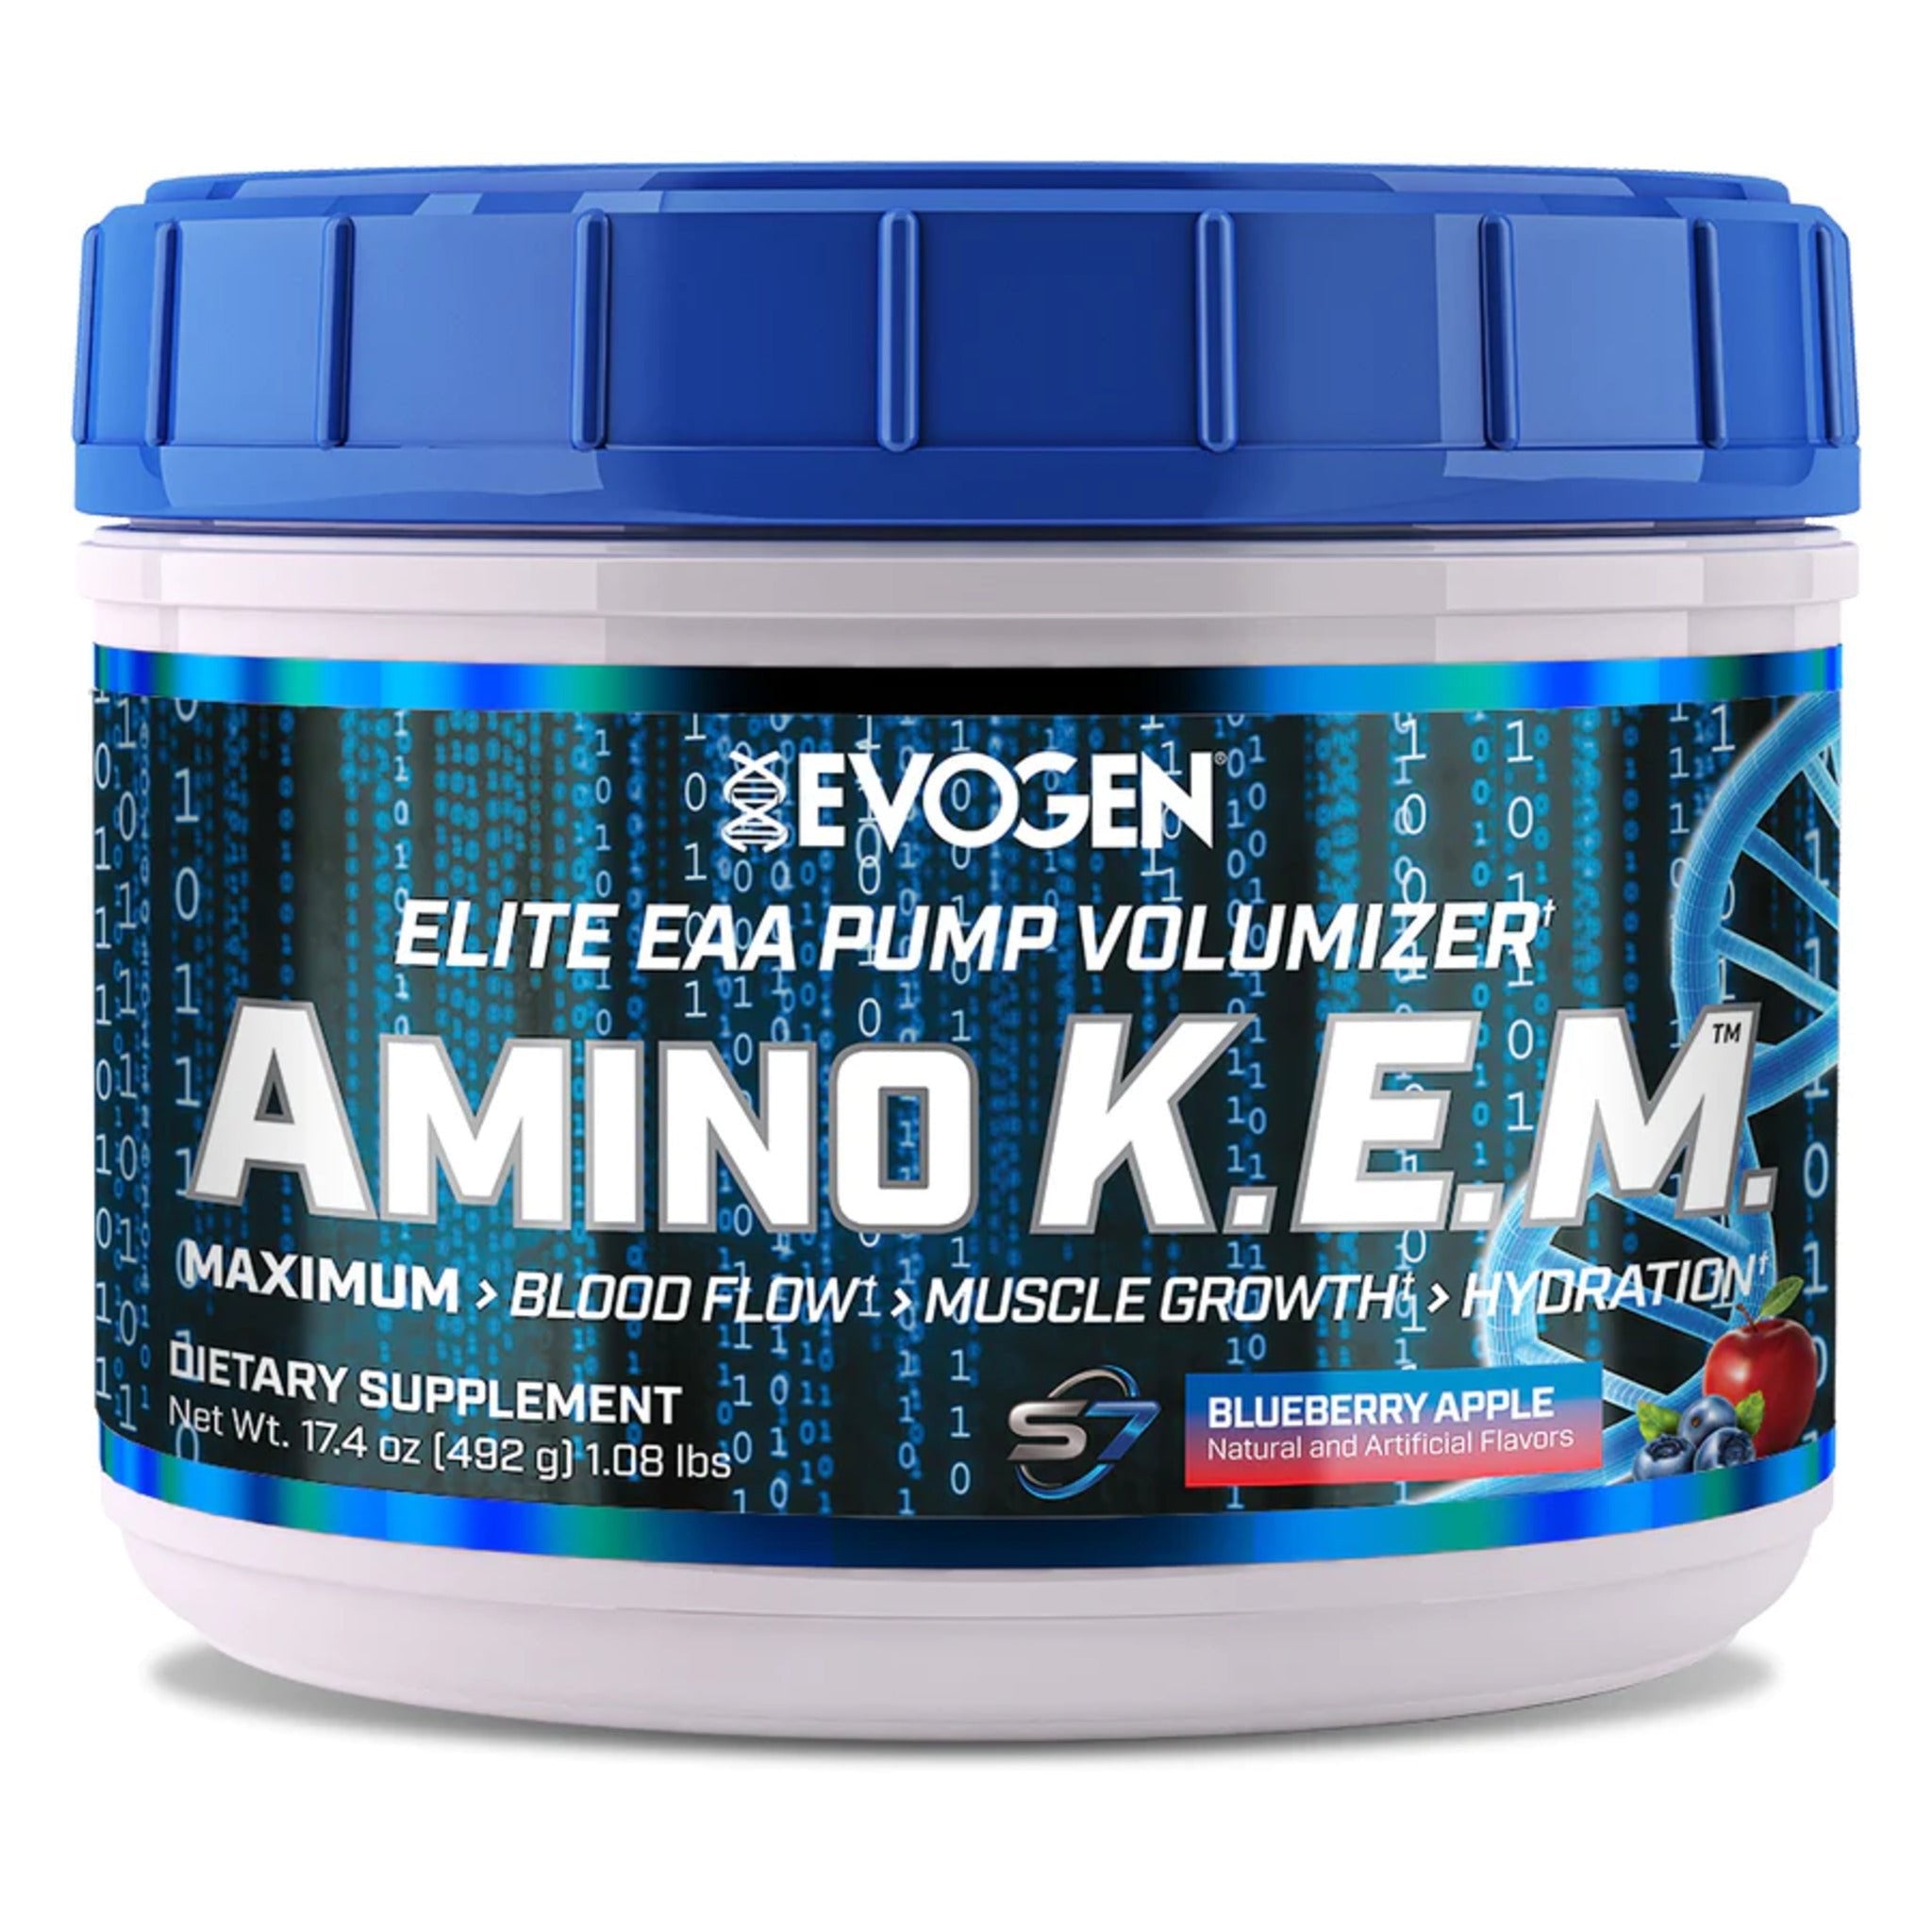 Aminoacizi Pudra, Evogen, Amino K.E.M. Elite EAA Pump Volumizer, 541g - gym-stack.ro